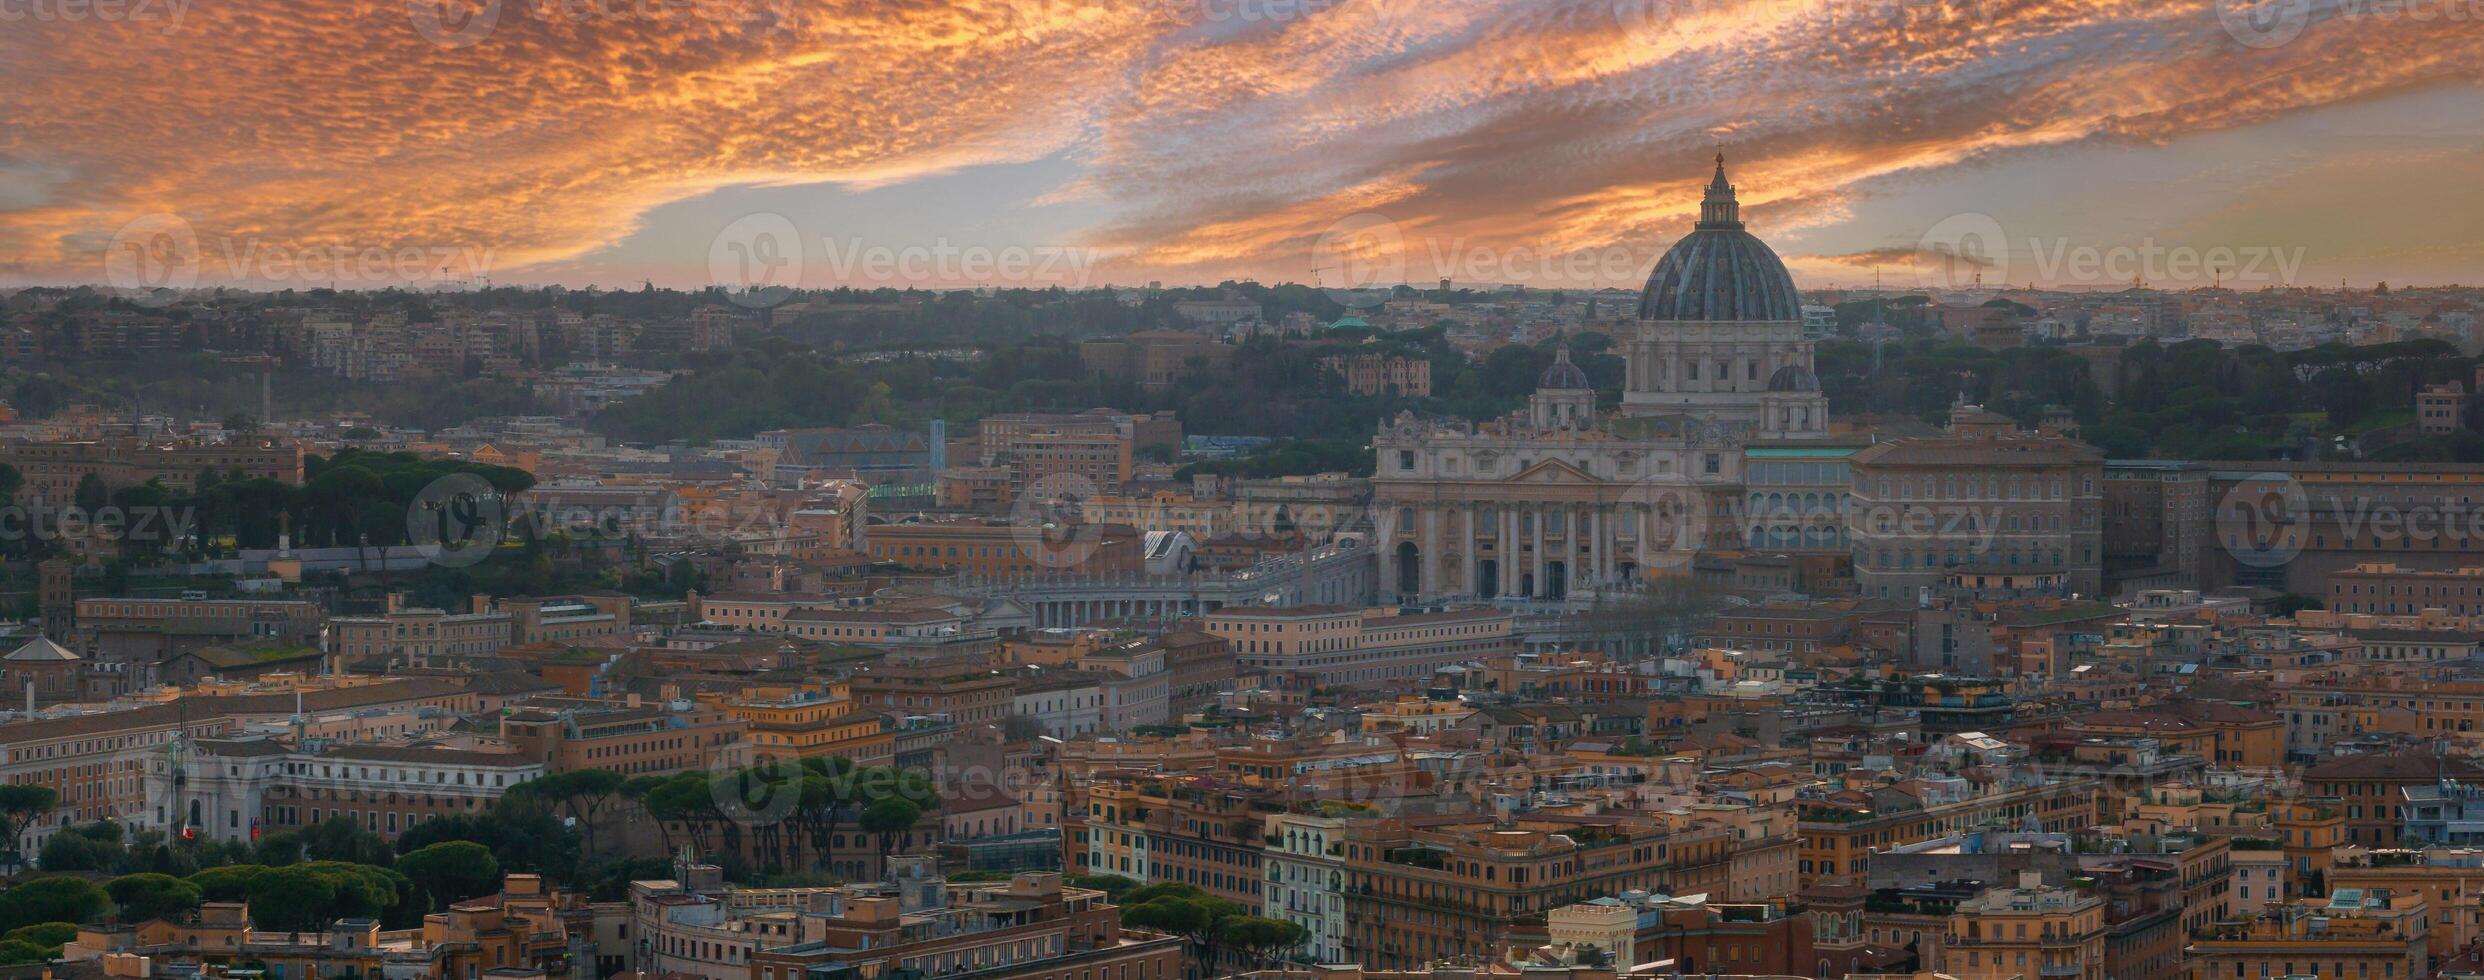 aéreo ver de Roma a oscuridad con S t. de pedro basílica dominante el horizonte foto